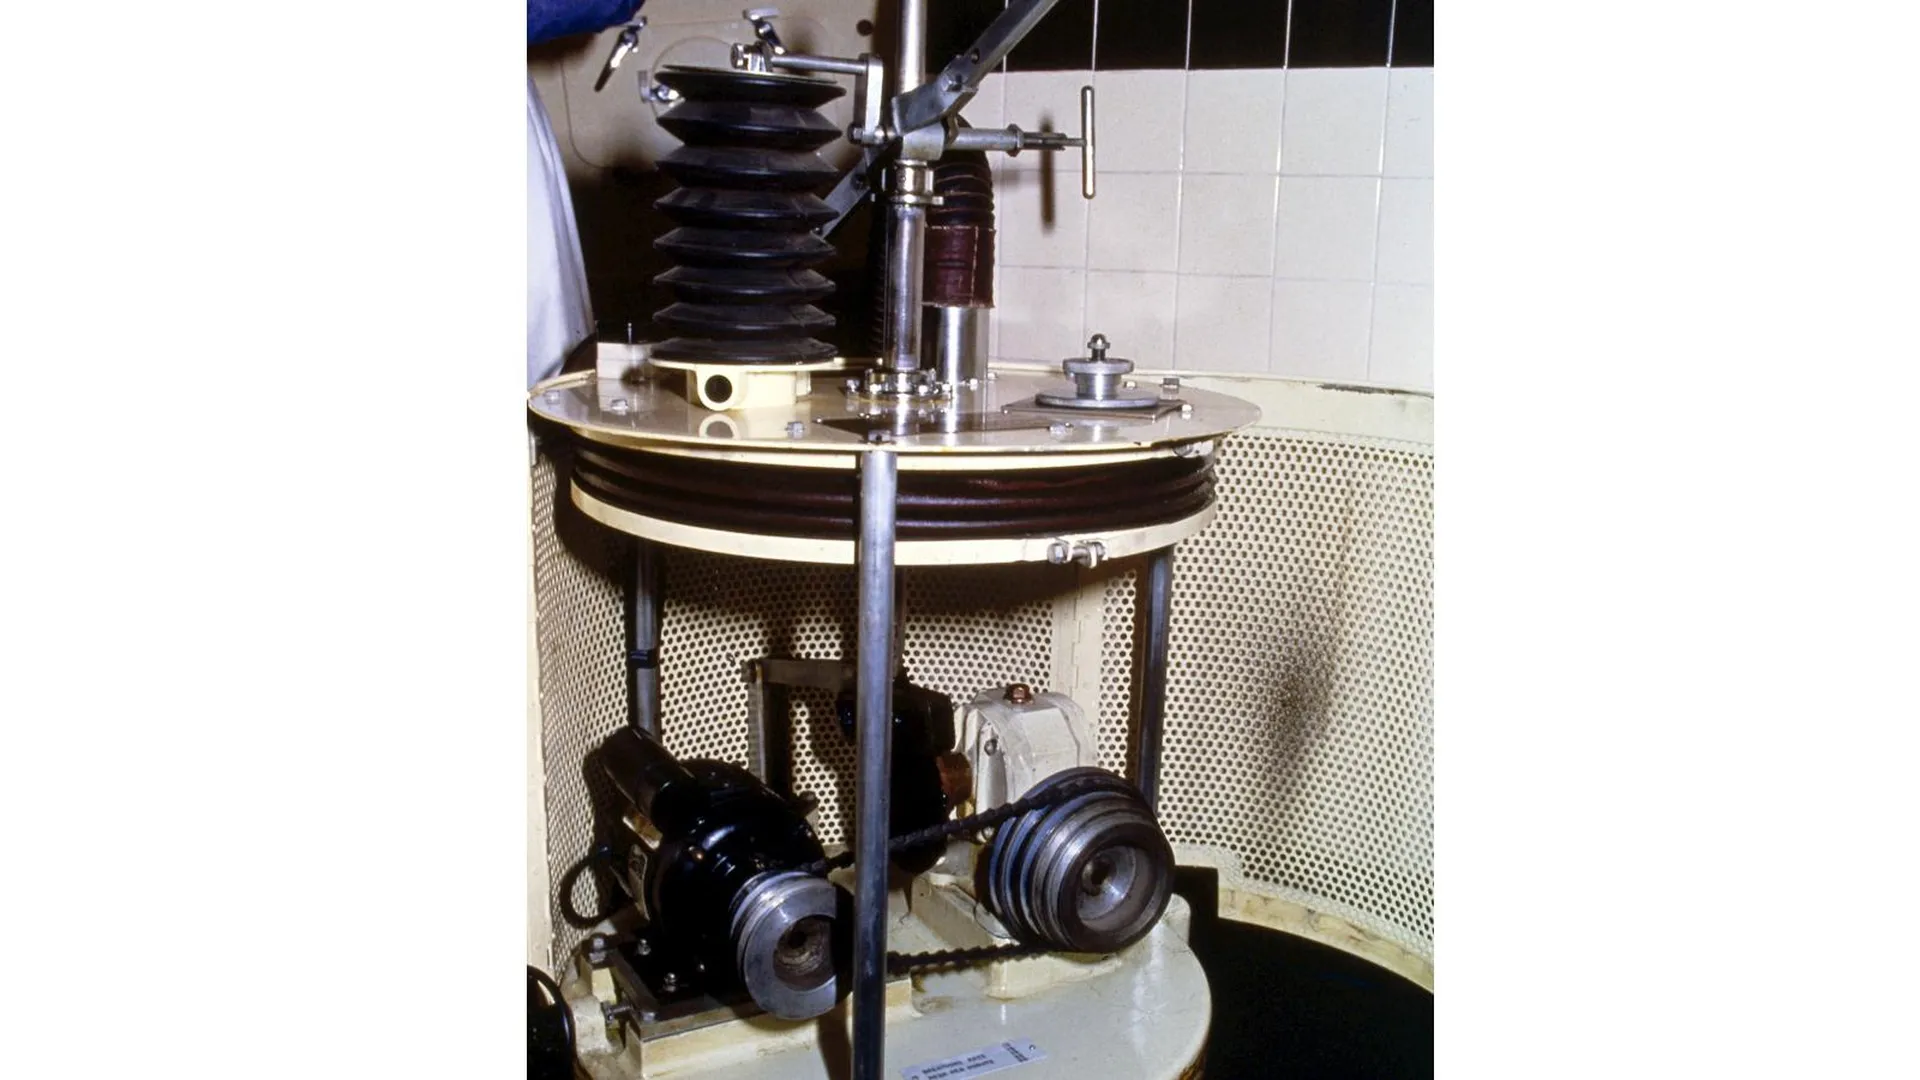 Сильфонный насос для работы «железного легкого» в Музее науки Лондона. Фото: Science Museum